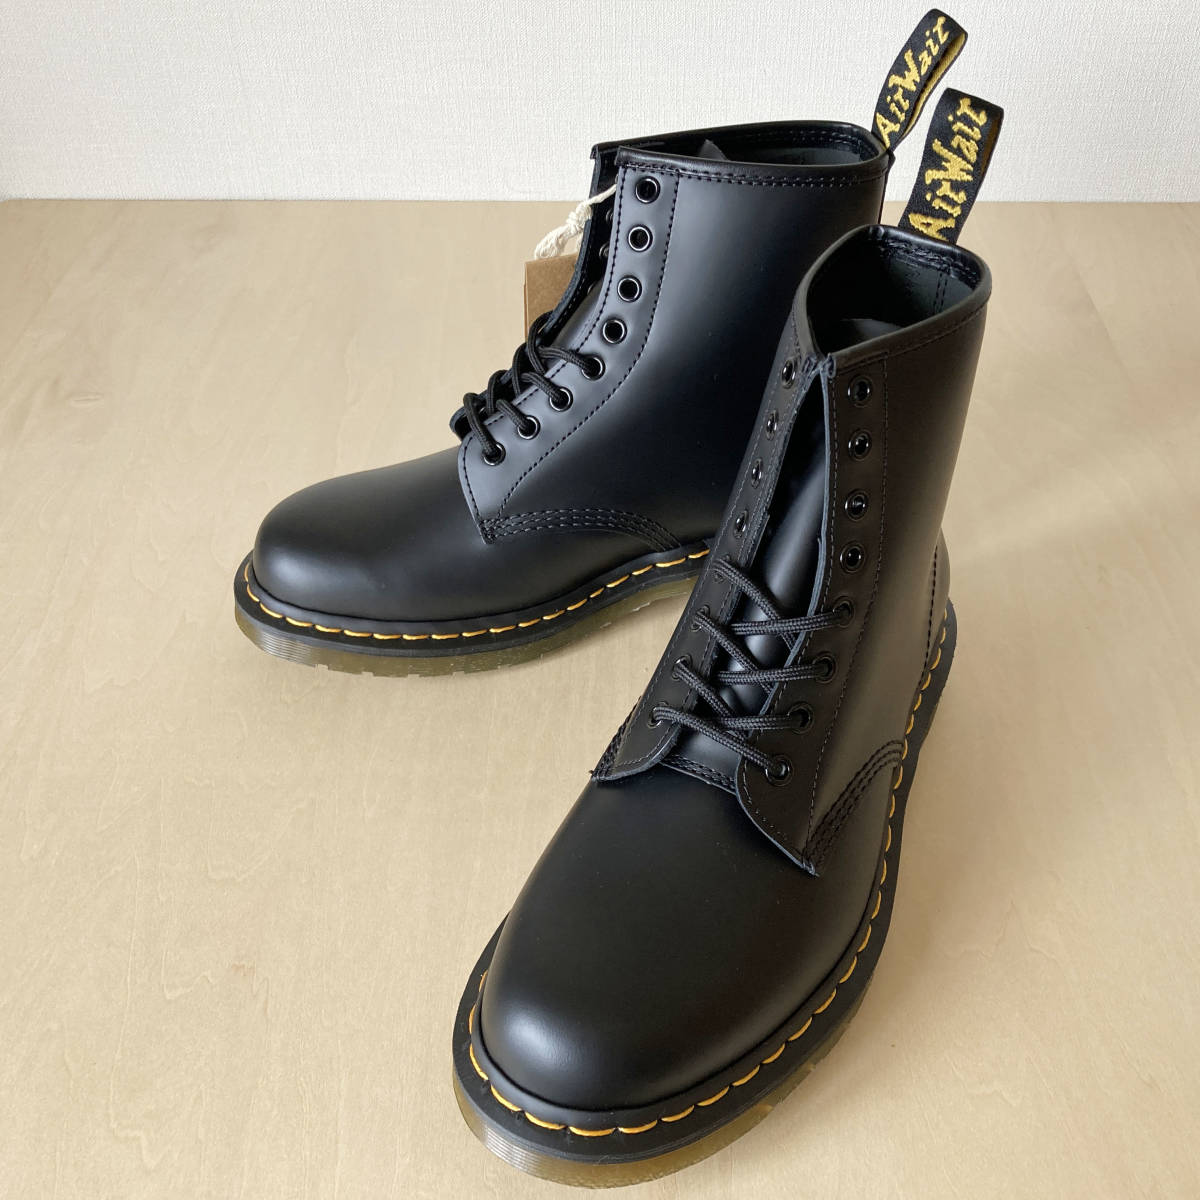 ファッションなデザイン 27cm BOOT ブーツ 11822006 UK8/27cm BLACK Originals Boot 8-EYE 1460 Dr.Martens 1460 8ホール ドクターマーチン 黒 UK8